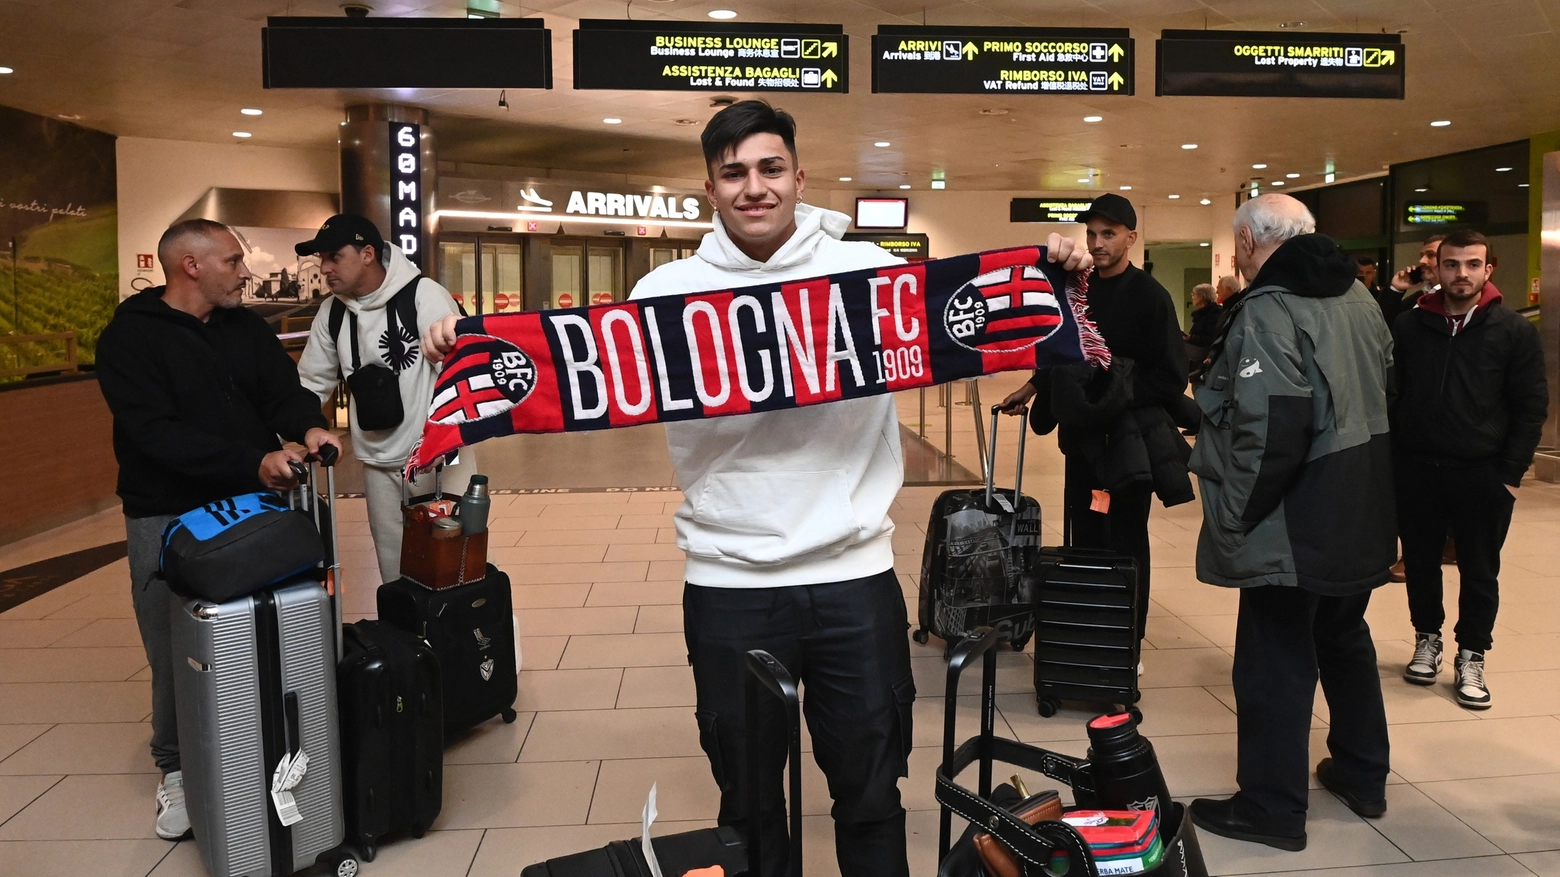 Santiago Castro è arrivato a Bologna: ad attenderlo una sciarpa rossoblù (foto Schicchi)